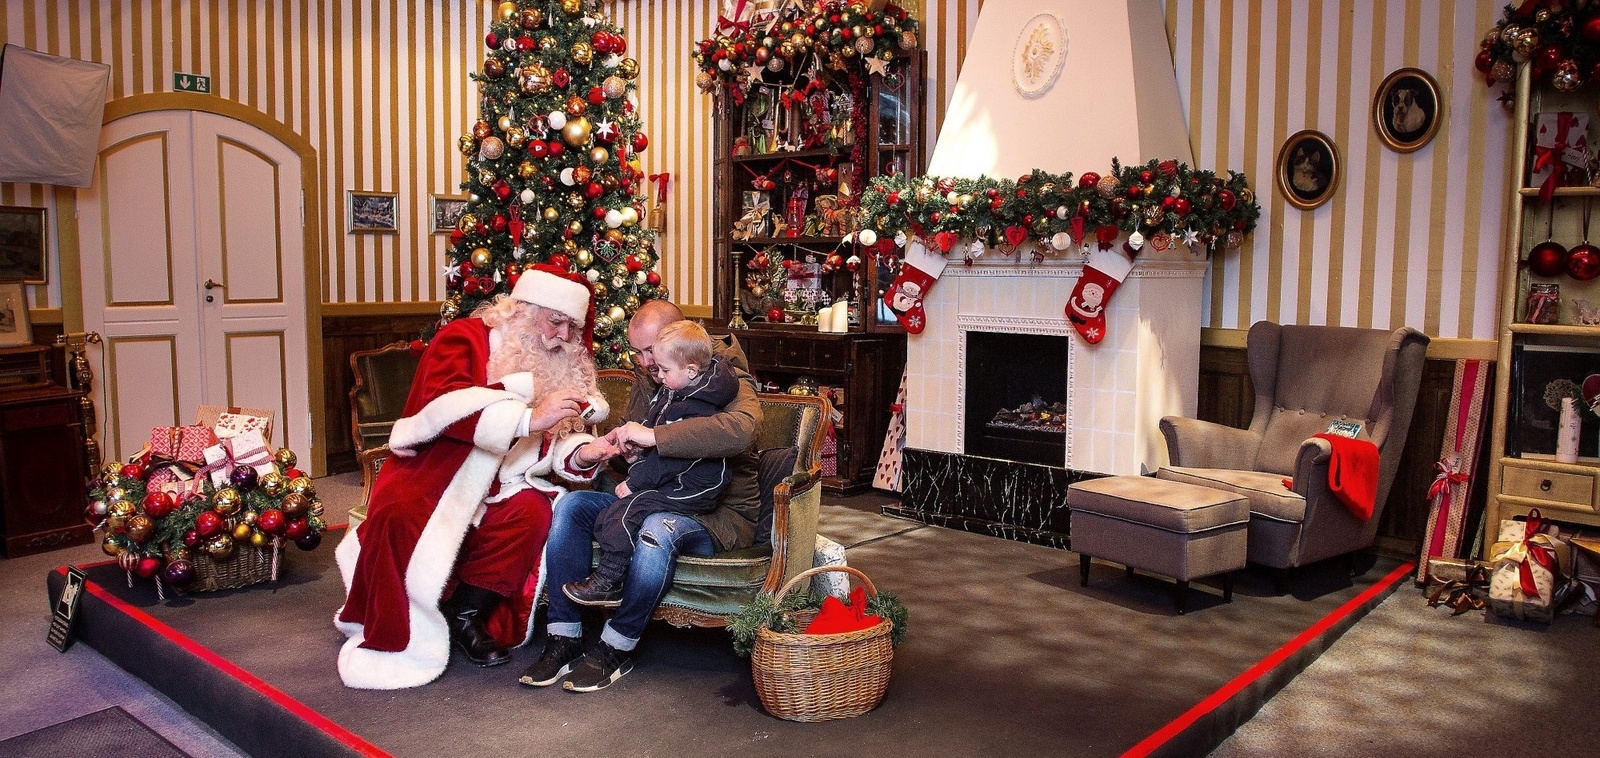 Jultomten har sitt eget hus på Tivoli i jul. Lunas tog med sig pappa Henrik när han besökte den rödklädde mannen.